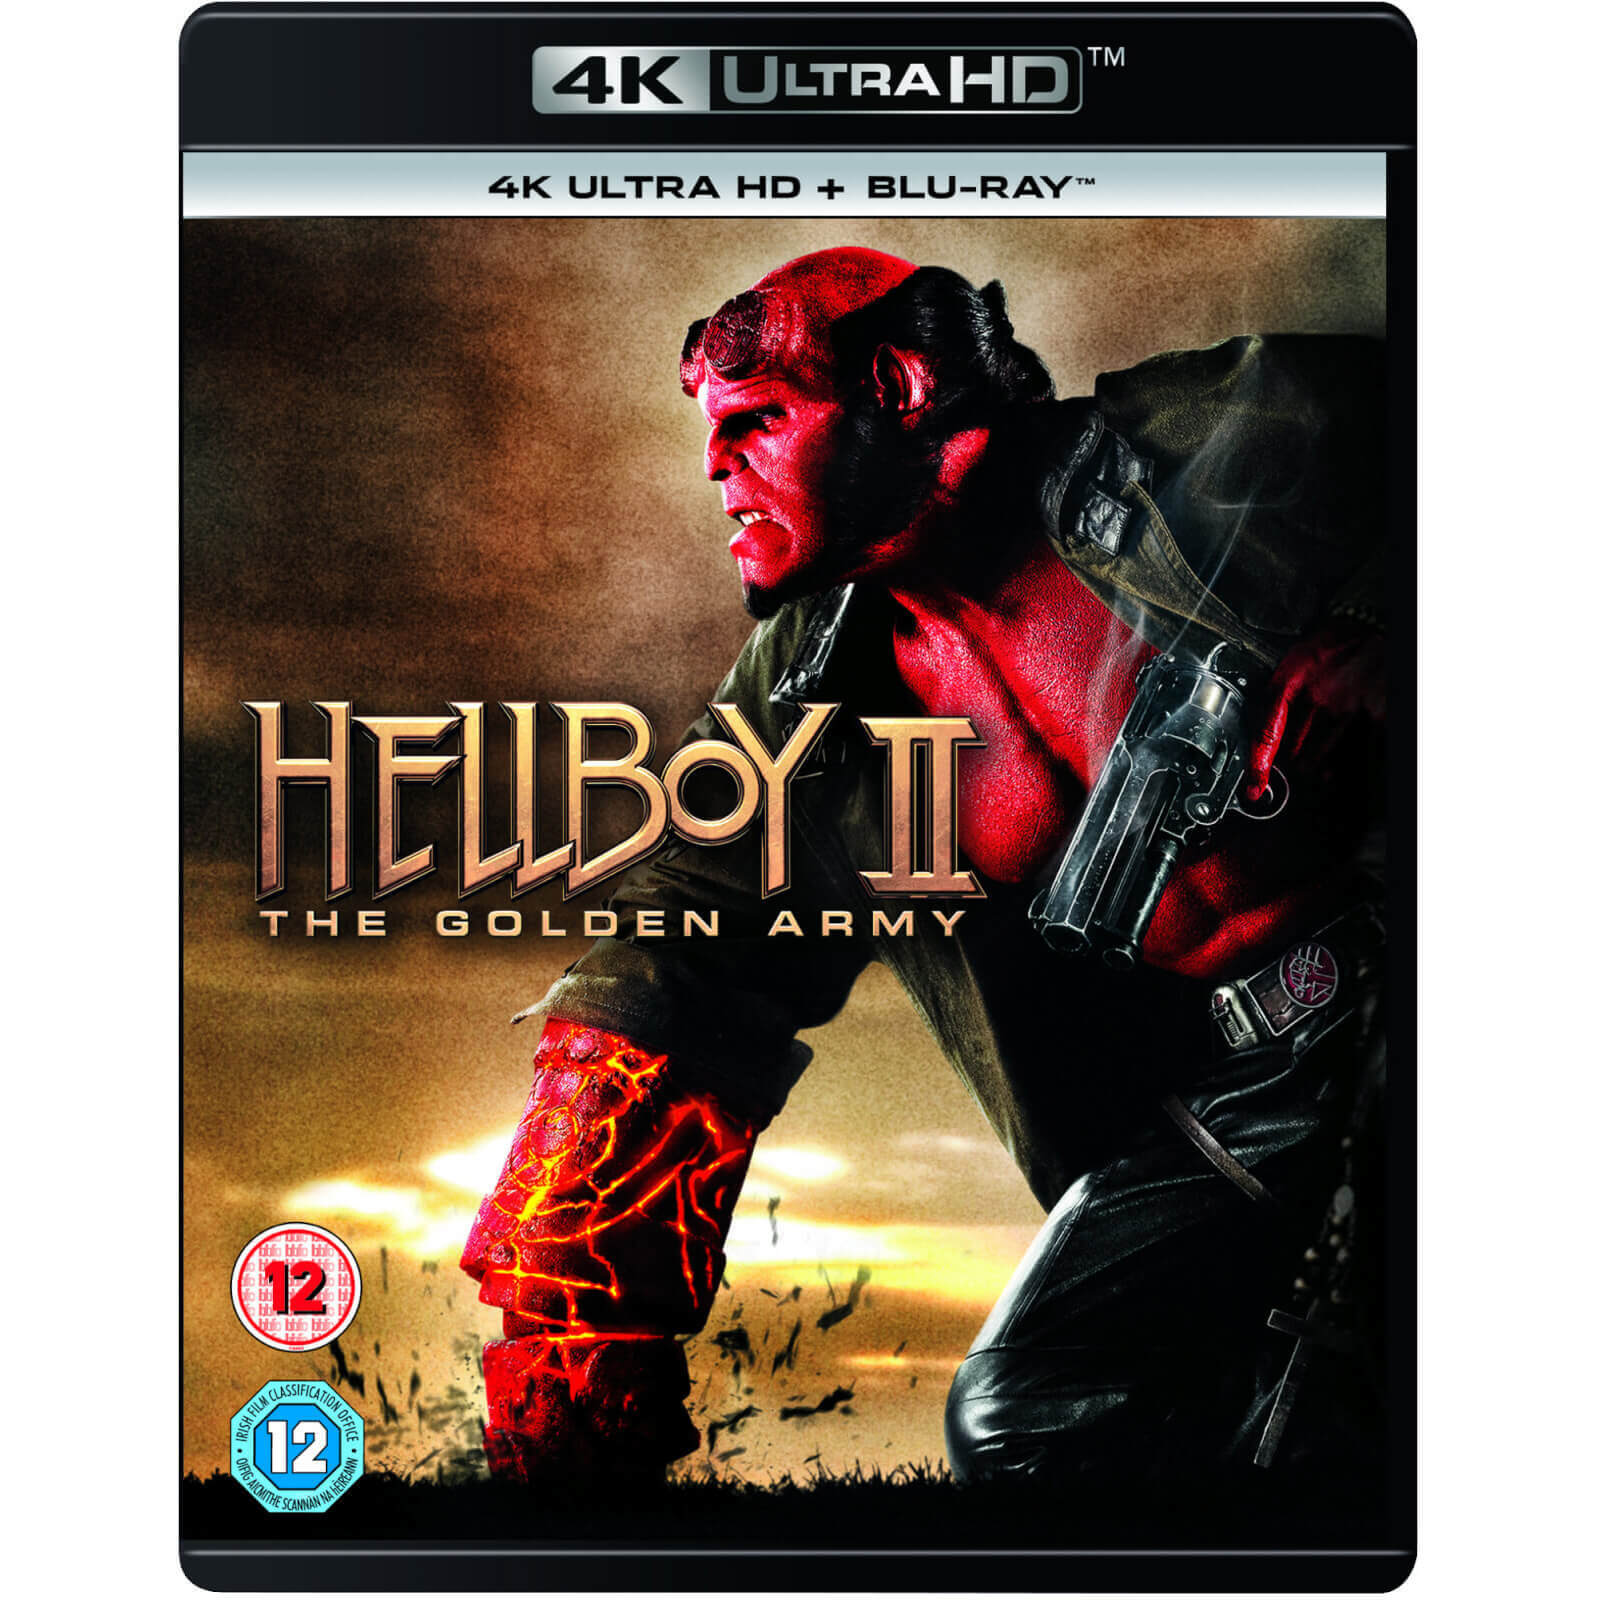 Hellboy II: Die goldene Armee - 4K Ultra HD